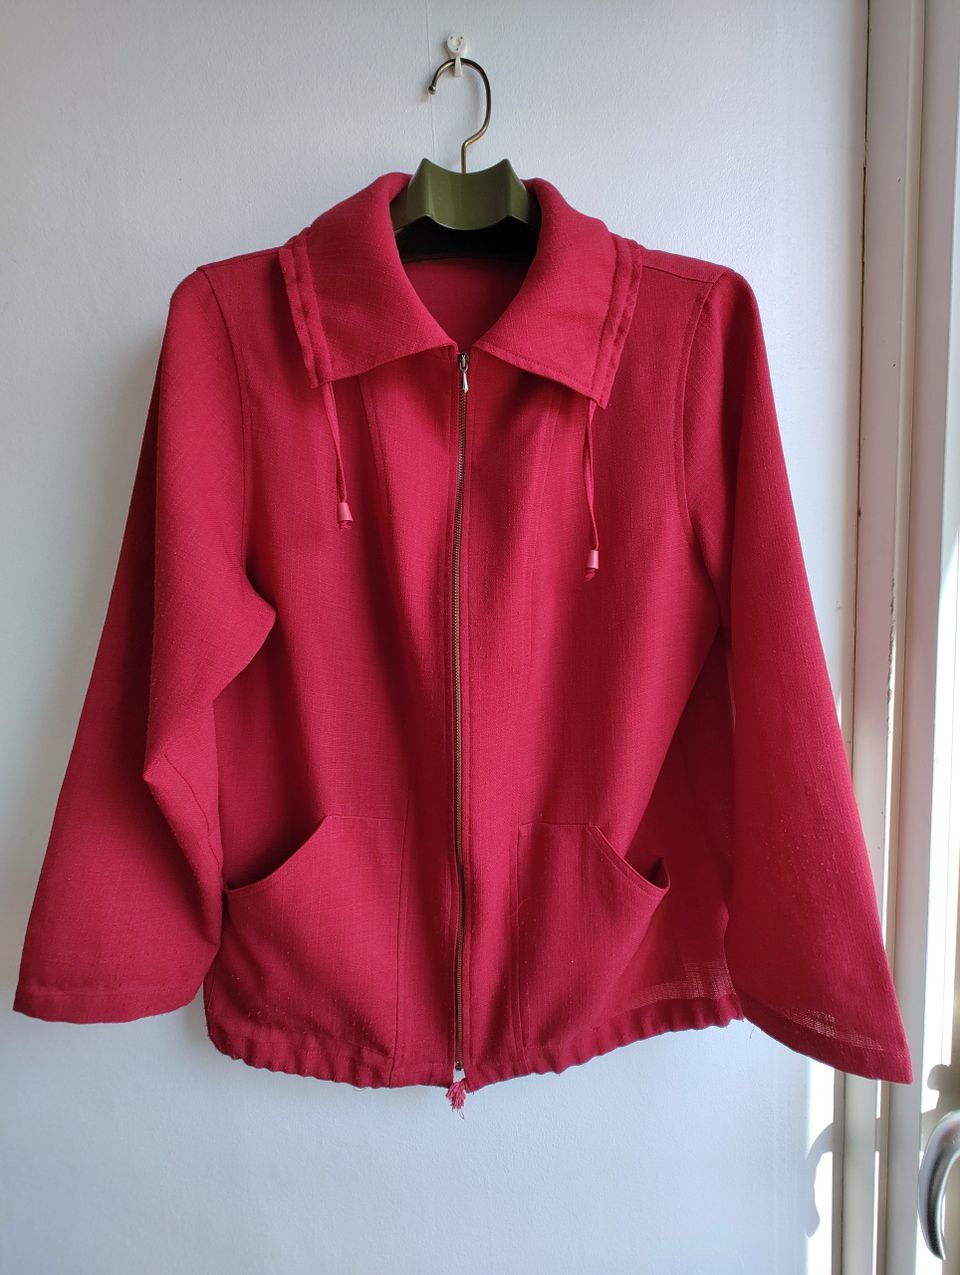 Punainen takki